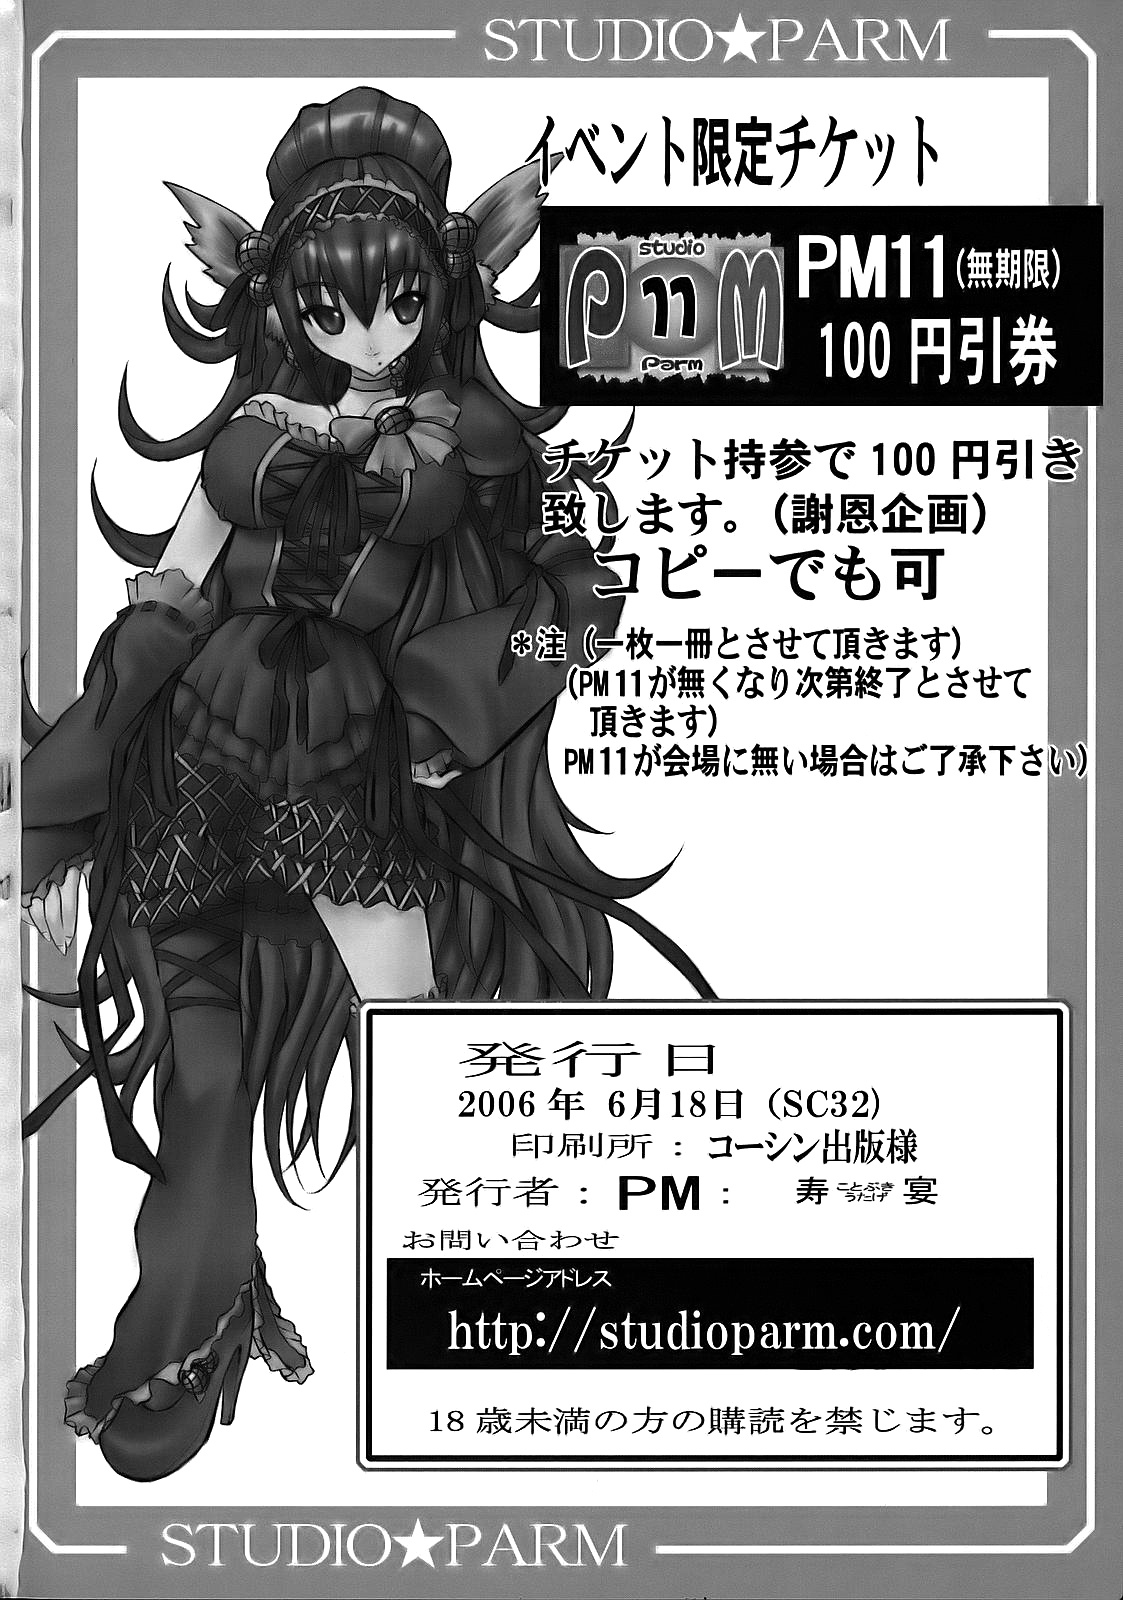 PM 10 - Indecent Ninja Training naruto 48 hentai manga